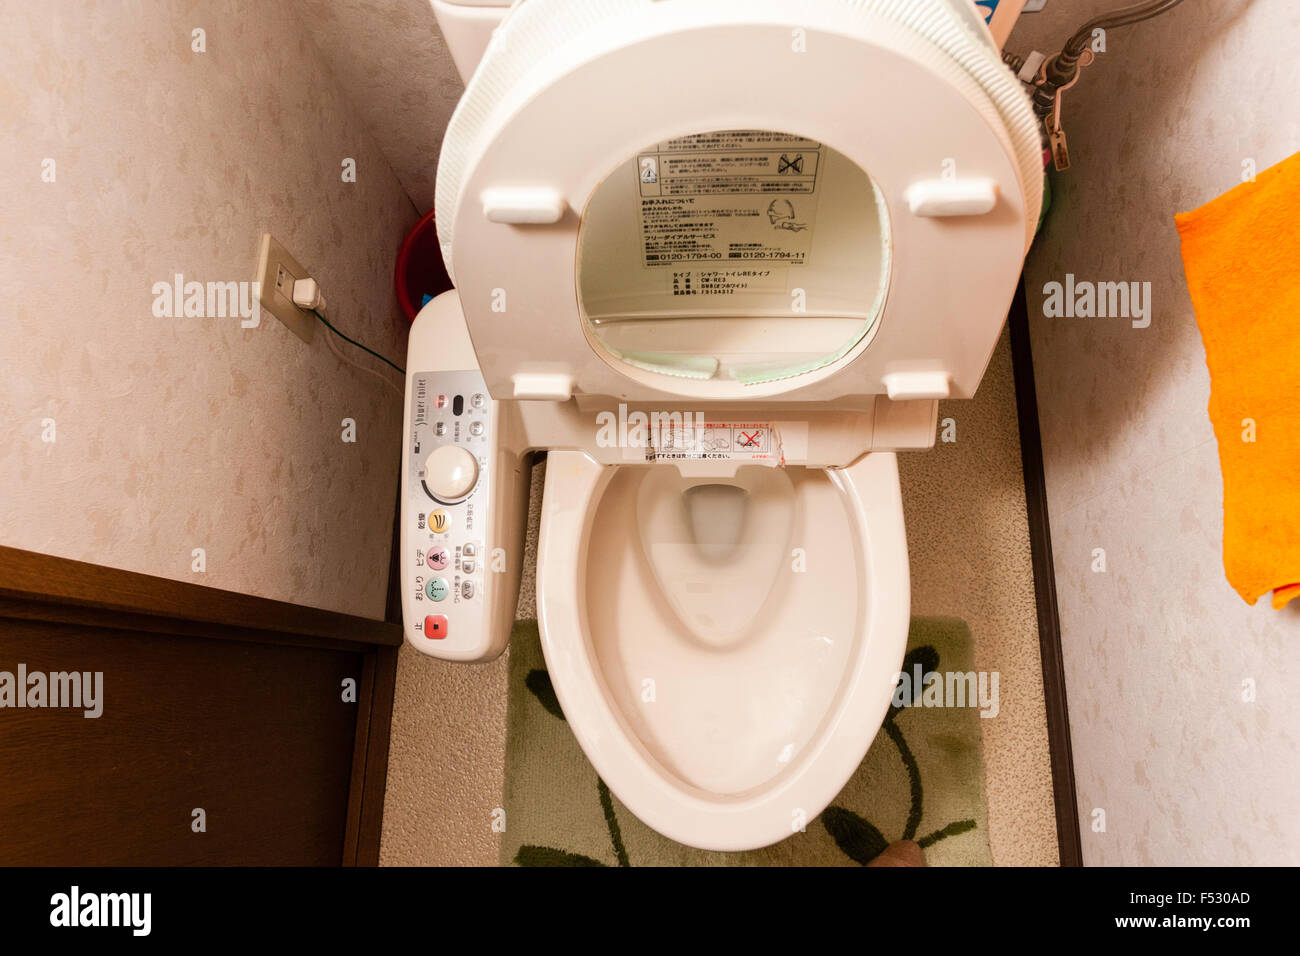 Toilette giapponese immagini e fotografie stock ad alta risoluzione - Alamy